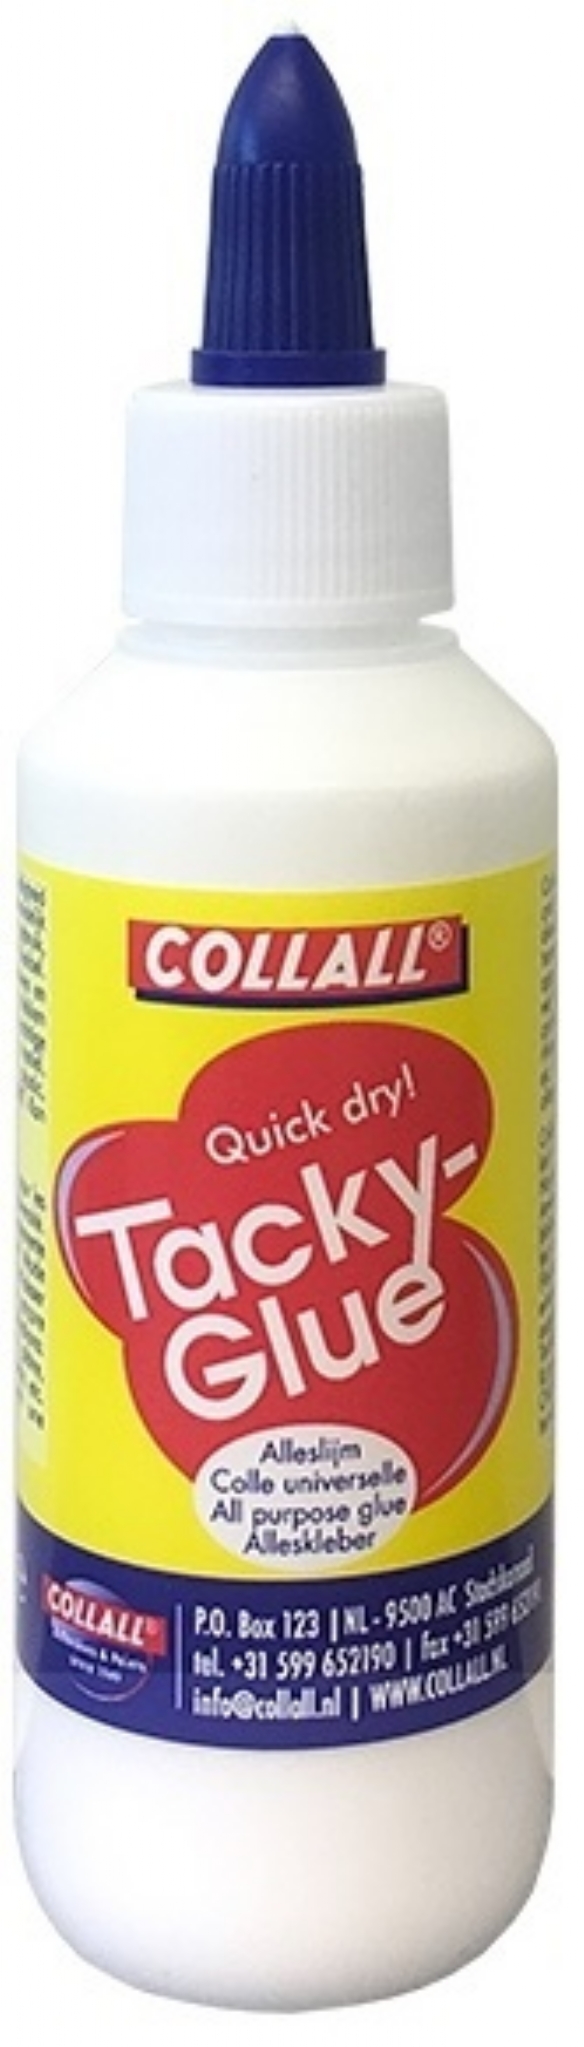 Collall TackyGlue, 100 ml kopen?